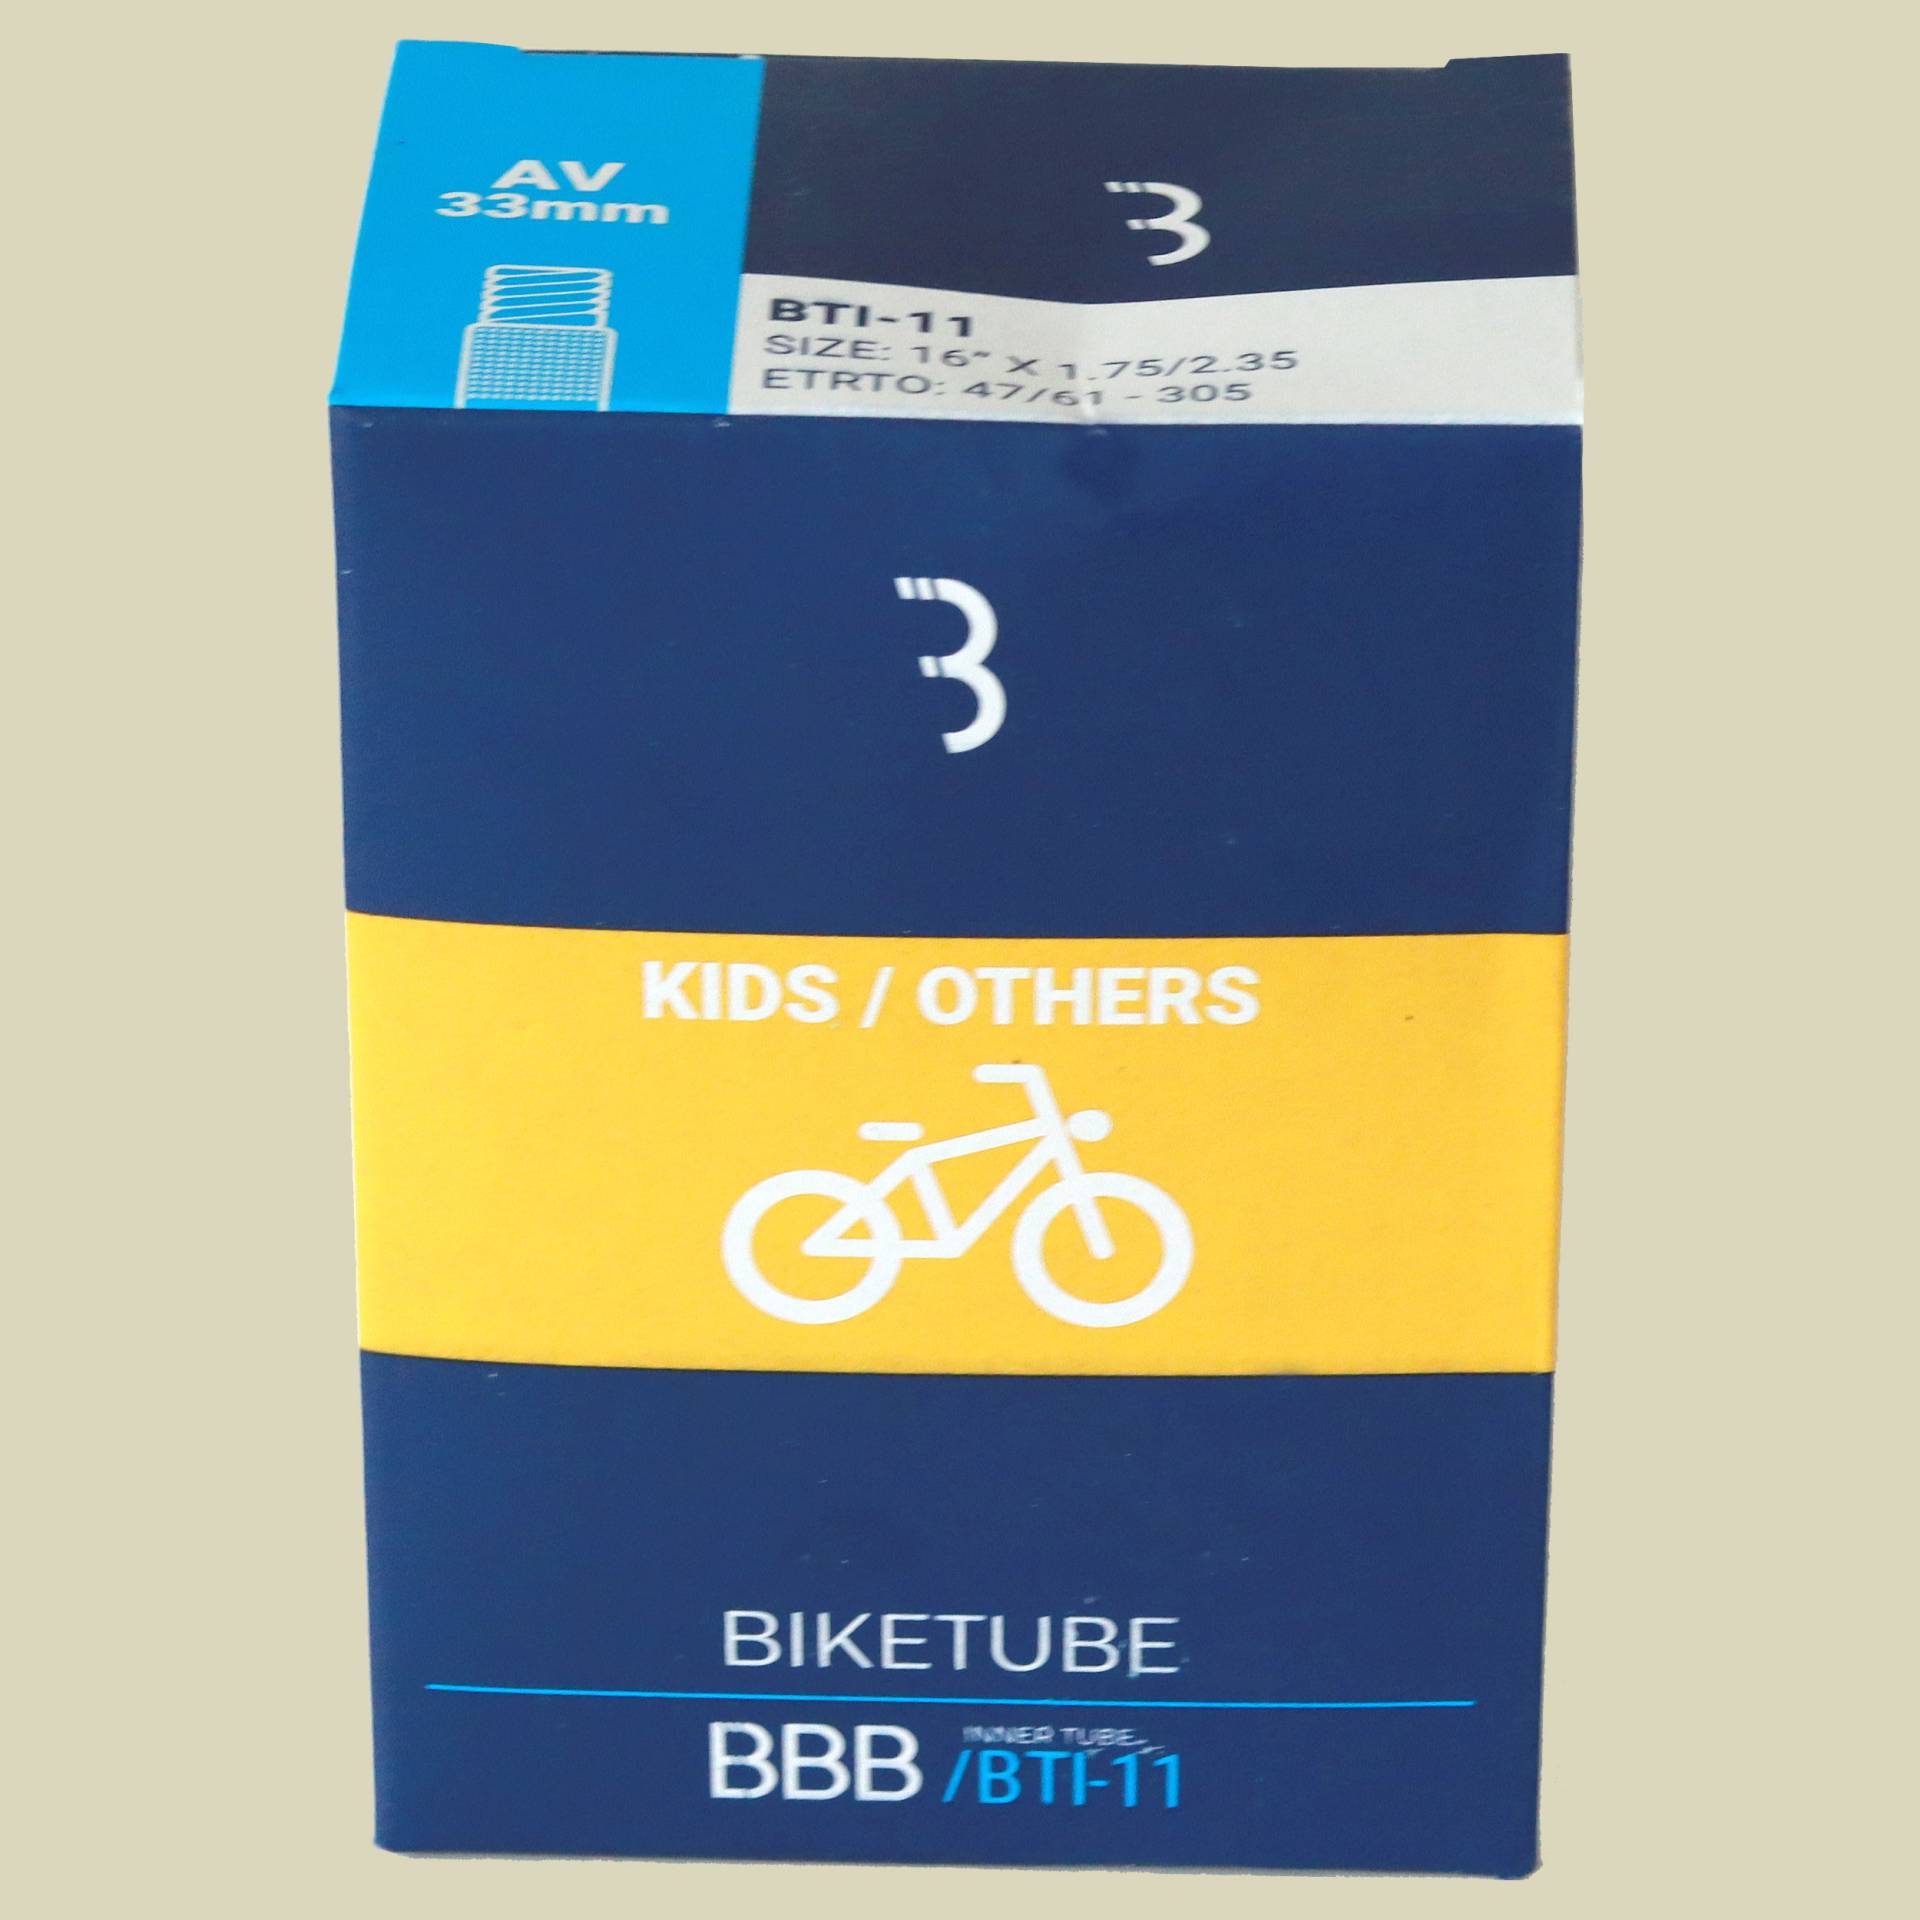 BTI-11 BikeTube 16 AV 16" x 1.75/2.35 von BBB Cycling